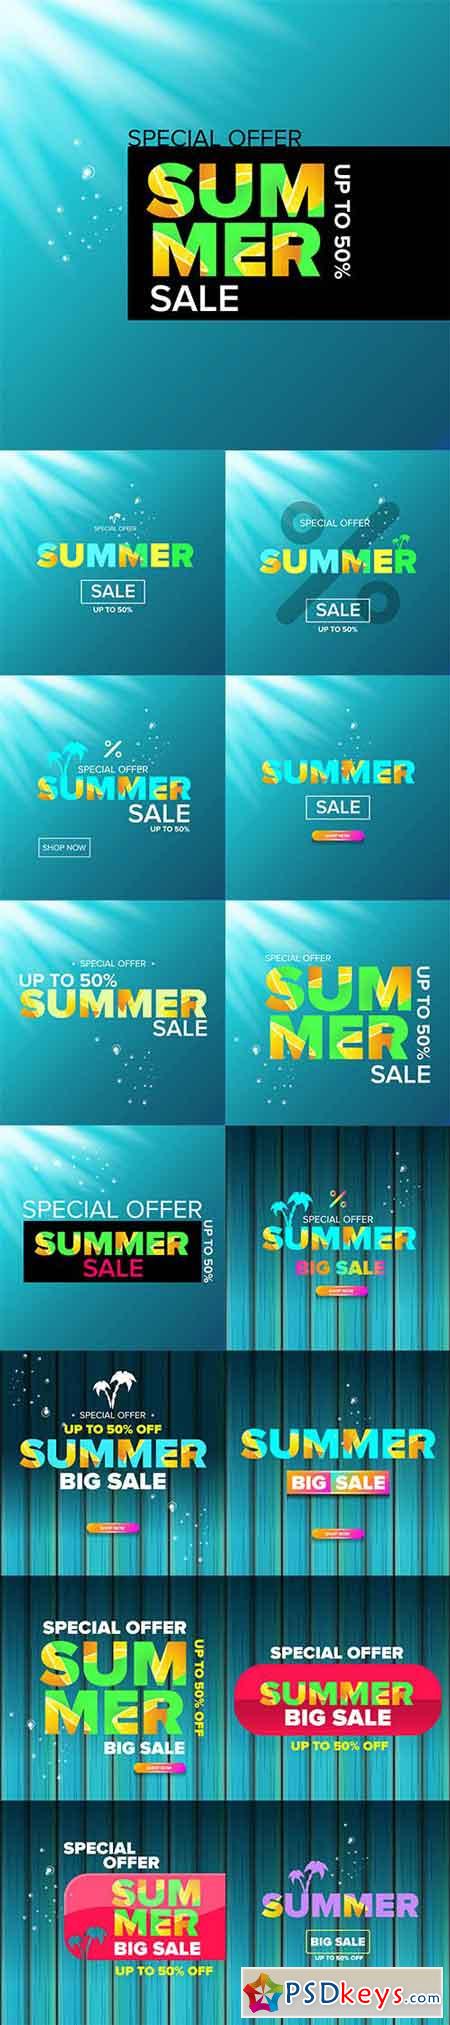 Summer sale modern color design template web banner or poster